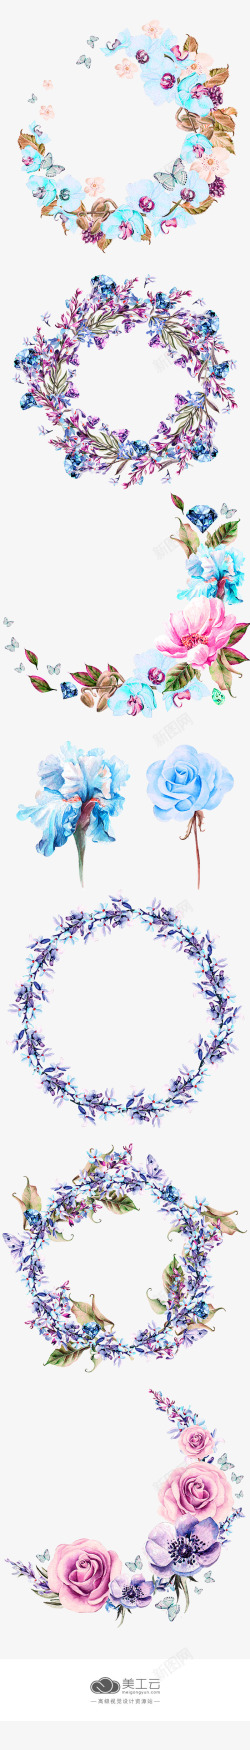 蓝色小清新手绘花环装饰图案素材